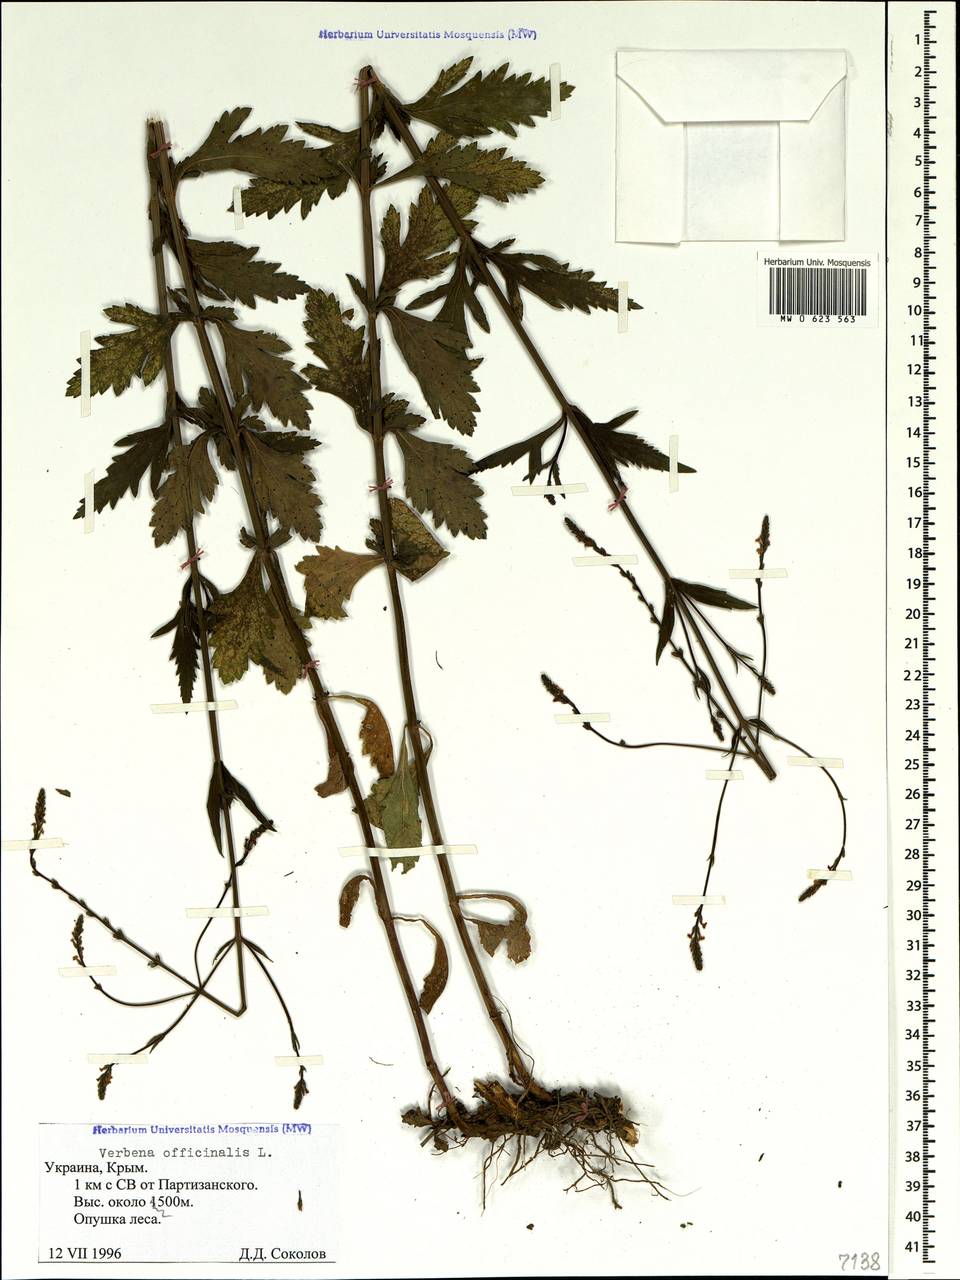 Verbena officinalis L., Crimea (KRYM) (Russia)